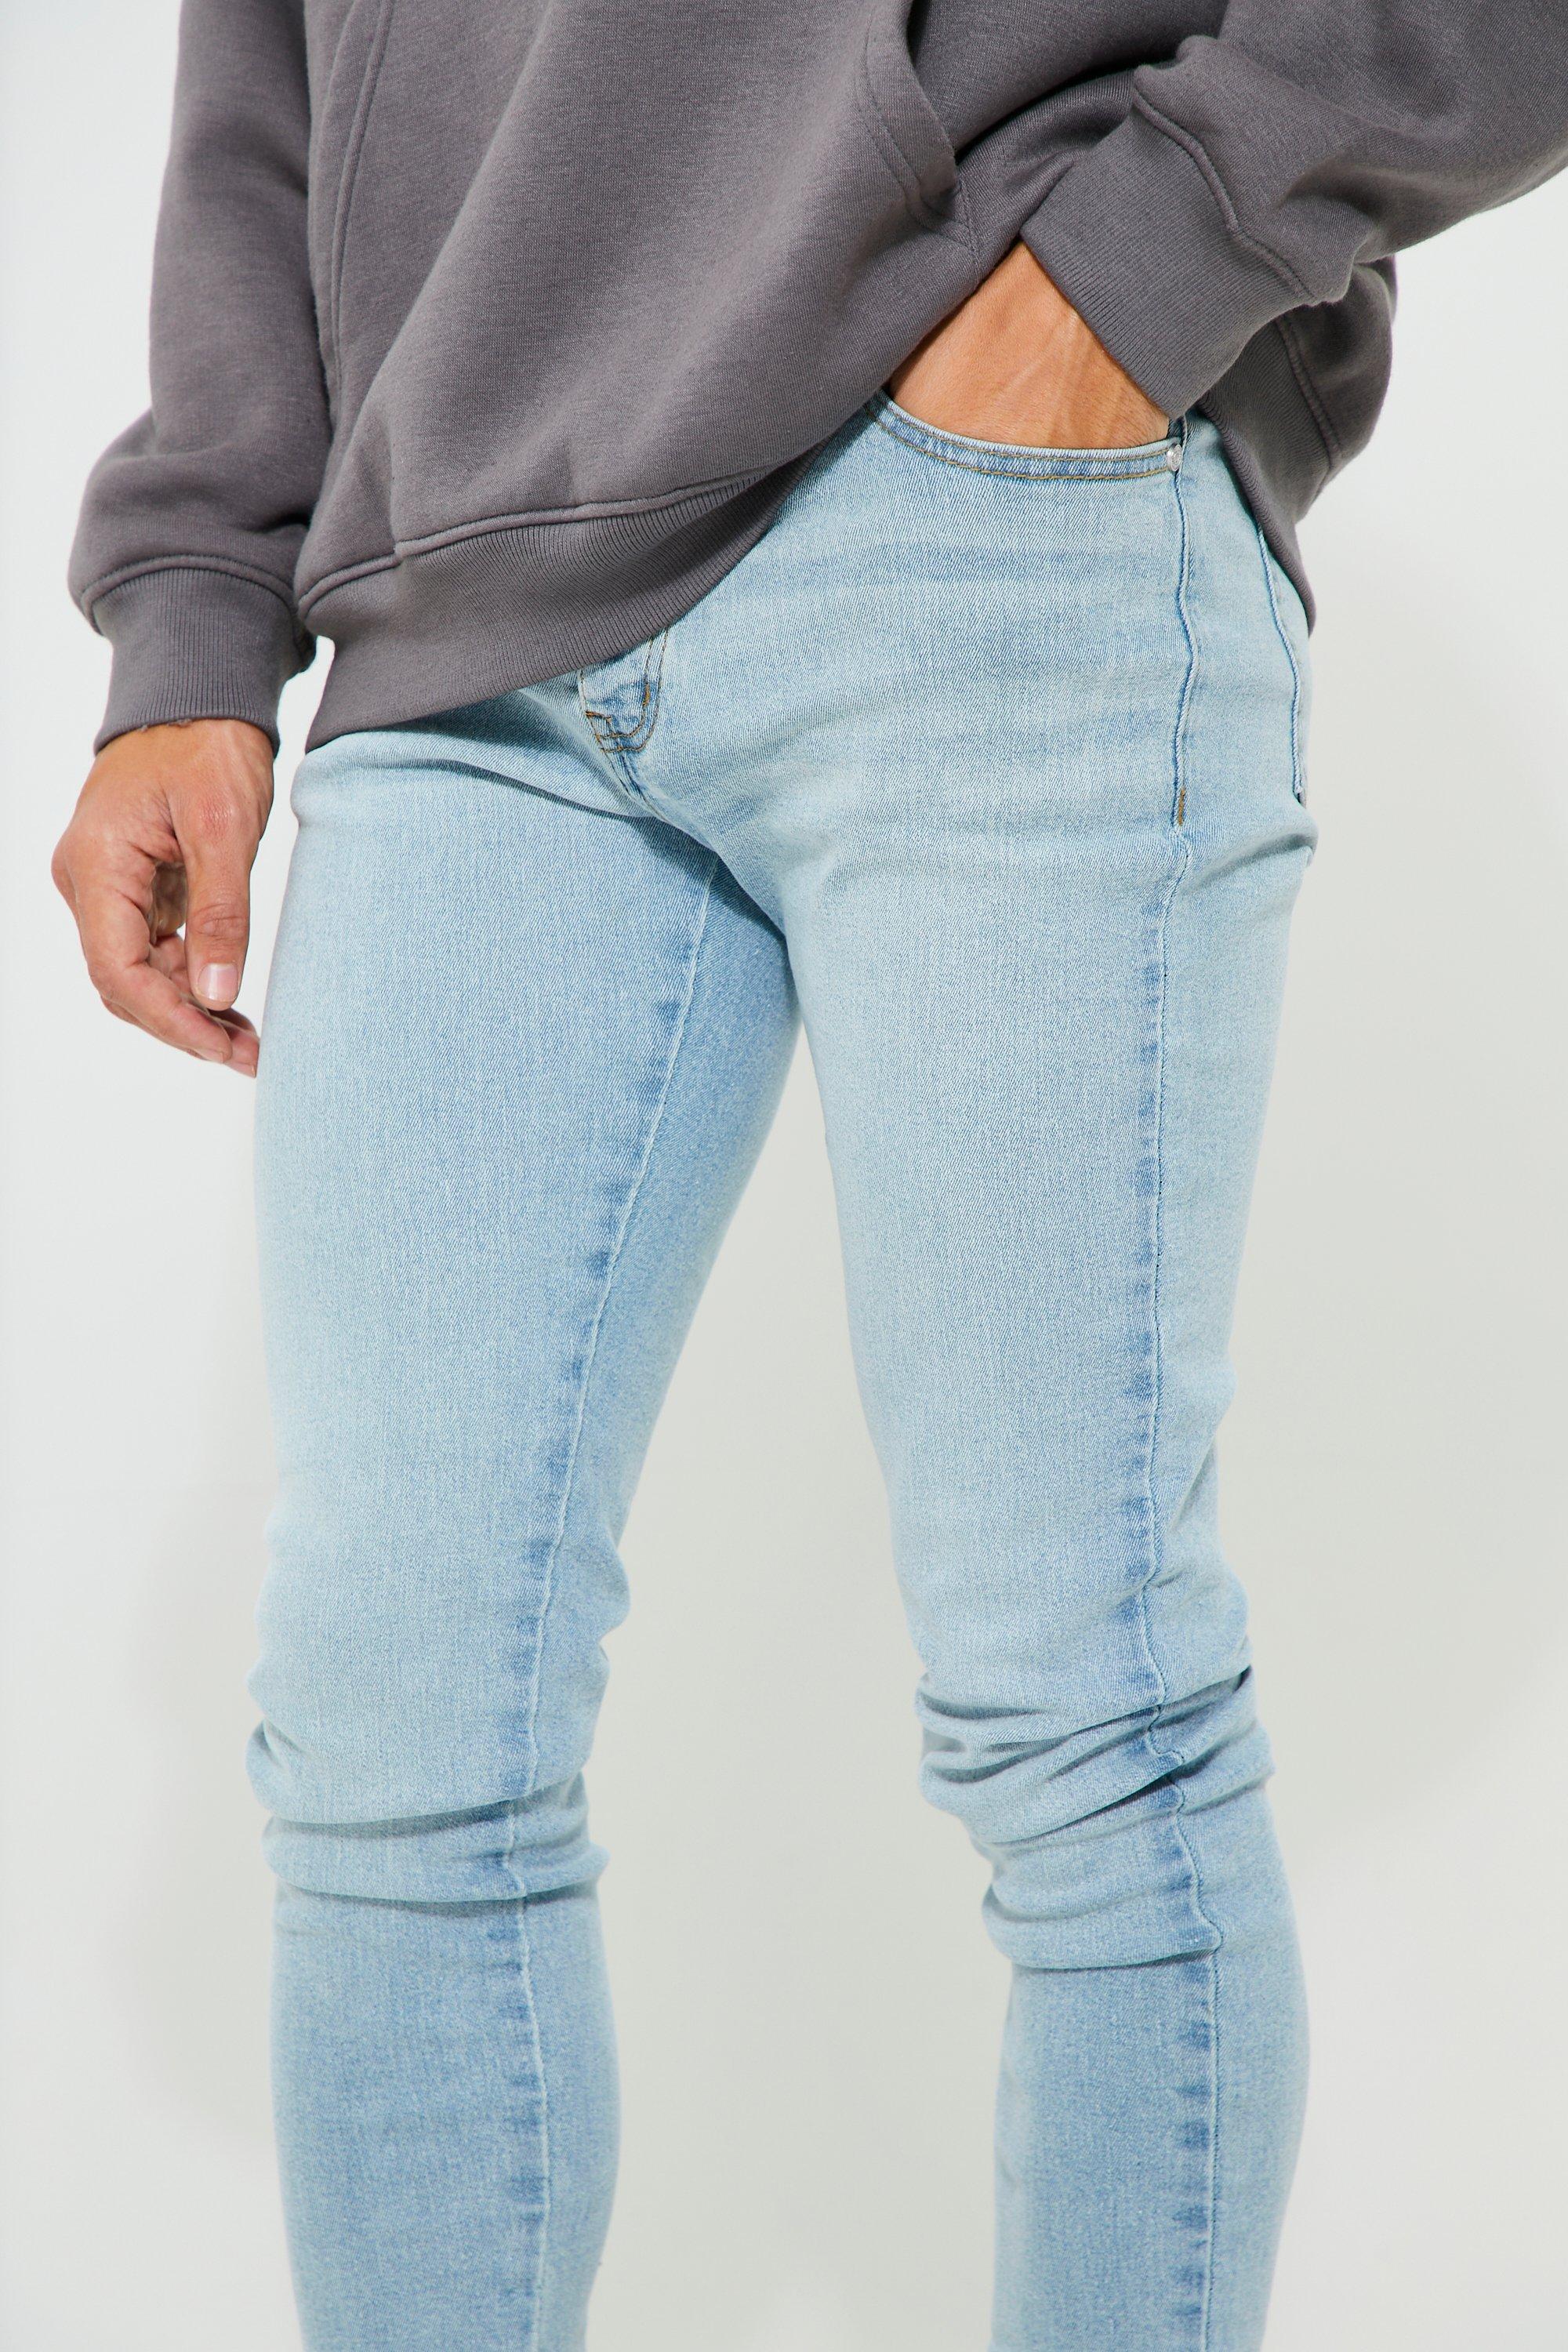 Mode Spijkerbroeken Slim jeans Meltin Pot Slim jeans blauw Jeans-look 